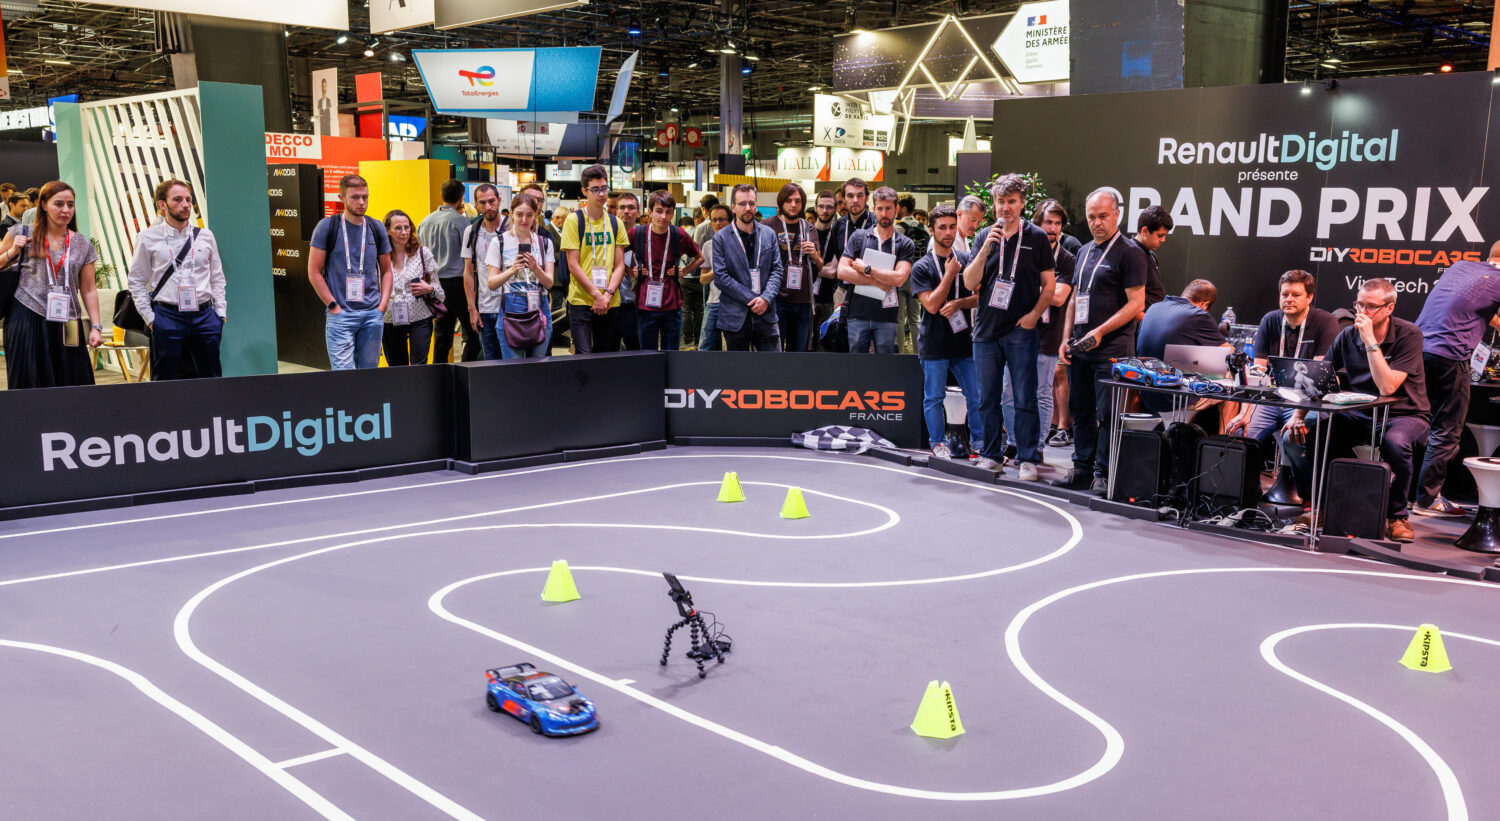 16-2022 - Story Robocars  le Grand Prix de voitures autonomes qui a anim VivaTech 2022 (4).jpg